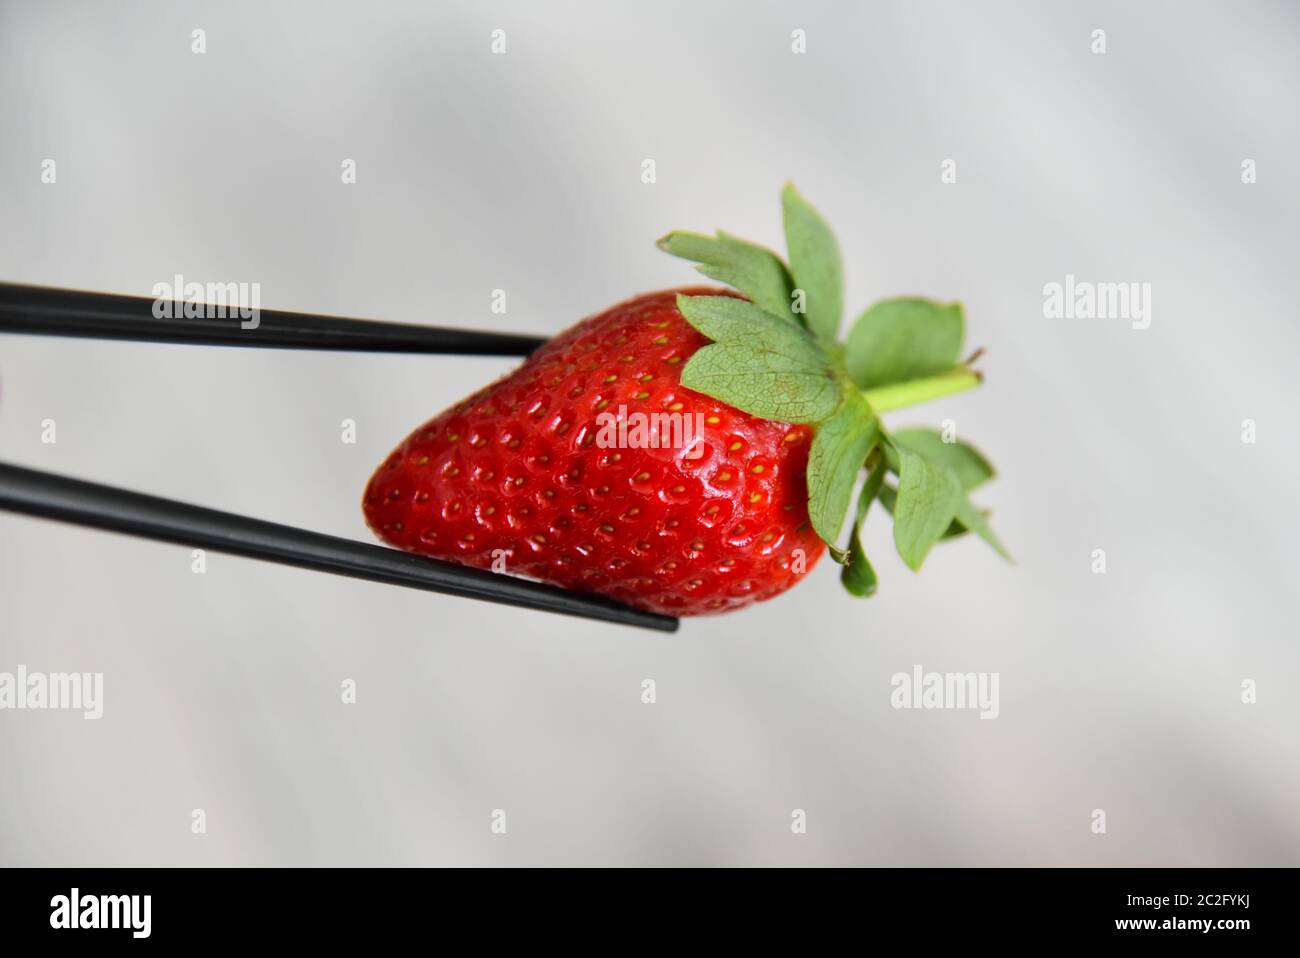 Nahaufnahme von Essstäbchen mit einer roten, saftigen Erdbeere mit grünen Blättern vor einem verschwommenen Hintergrund. Stockfoto